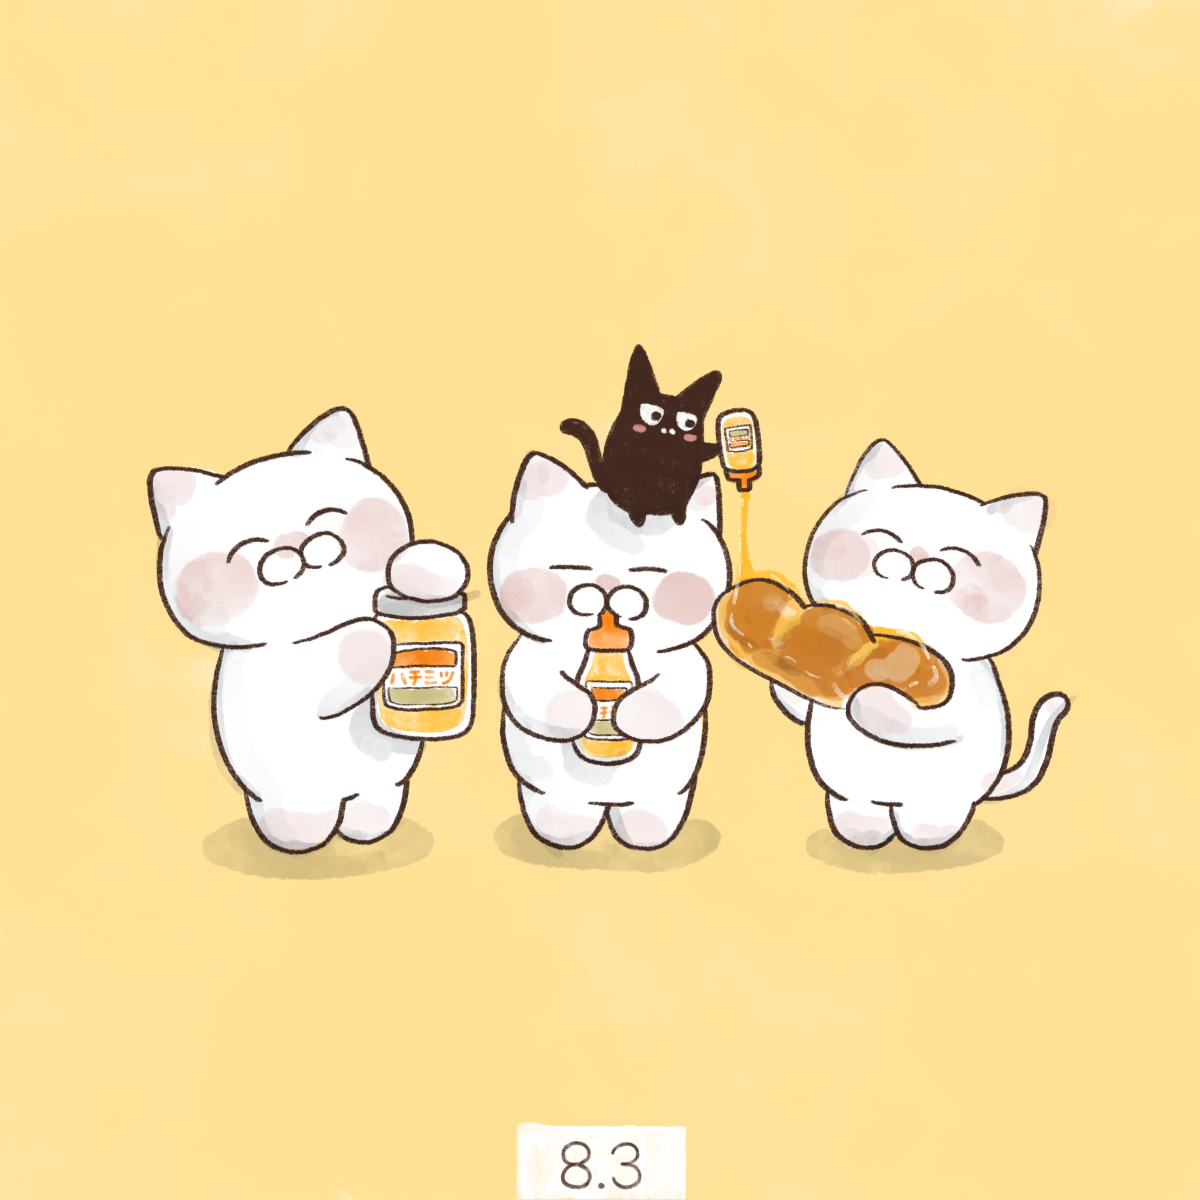 「8月3日【ハチミツの日】 「83→はちみつ」の語呂合わせで、全日本はちみつ協同組」|大和猫のイラスト